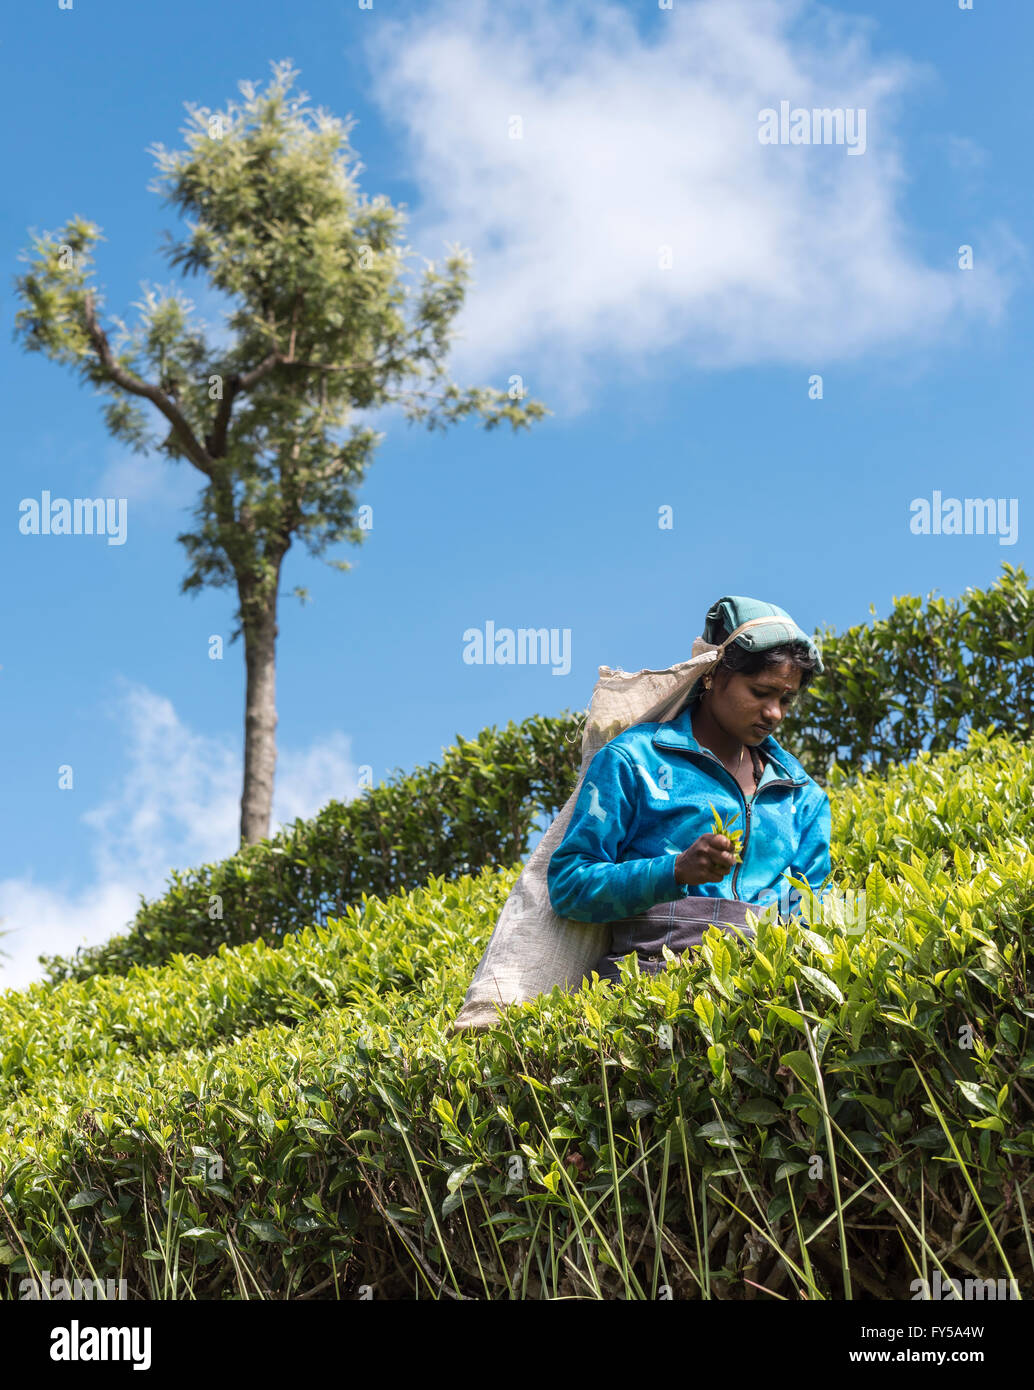 Tea Picker at Dambatenne tea plantation, Lipton's Seat, Sri Lanka Stock Photo